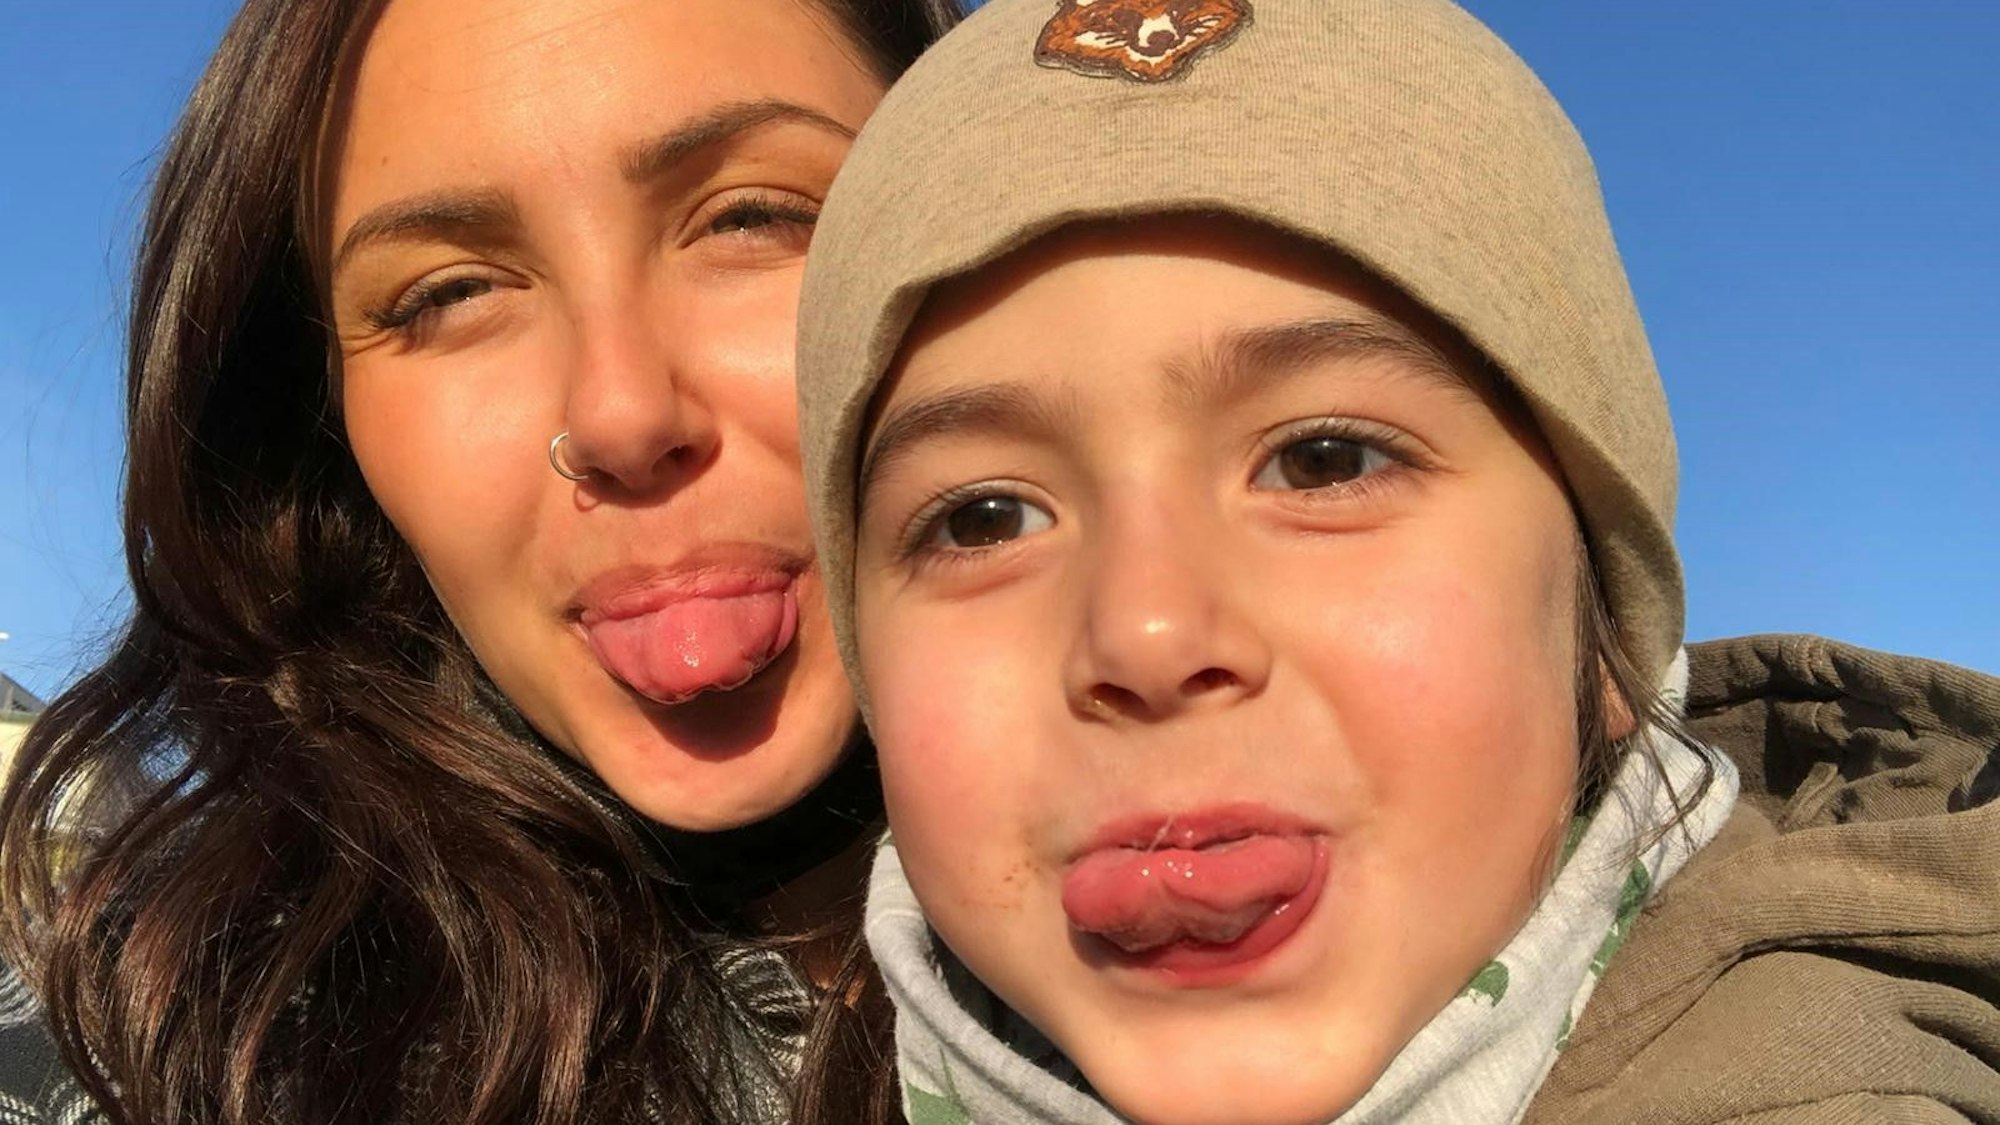 Derya und ihr Sohn Kian strecken dem Fotografen die Zunge raus.